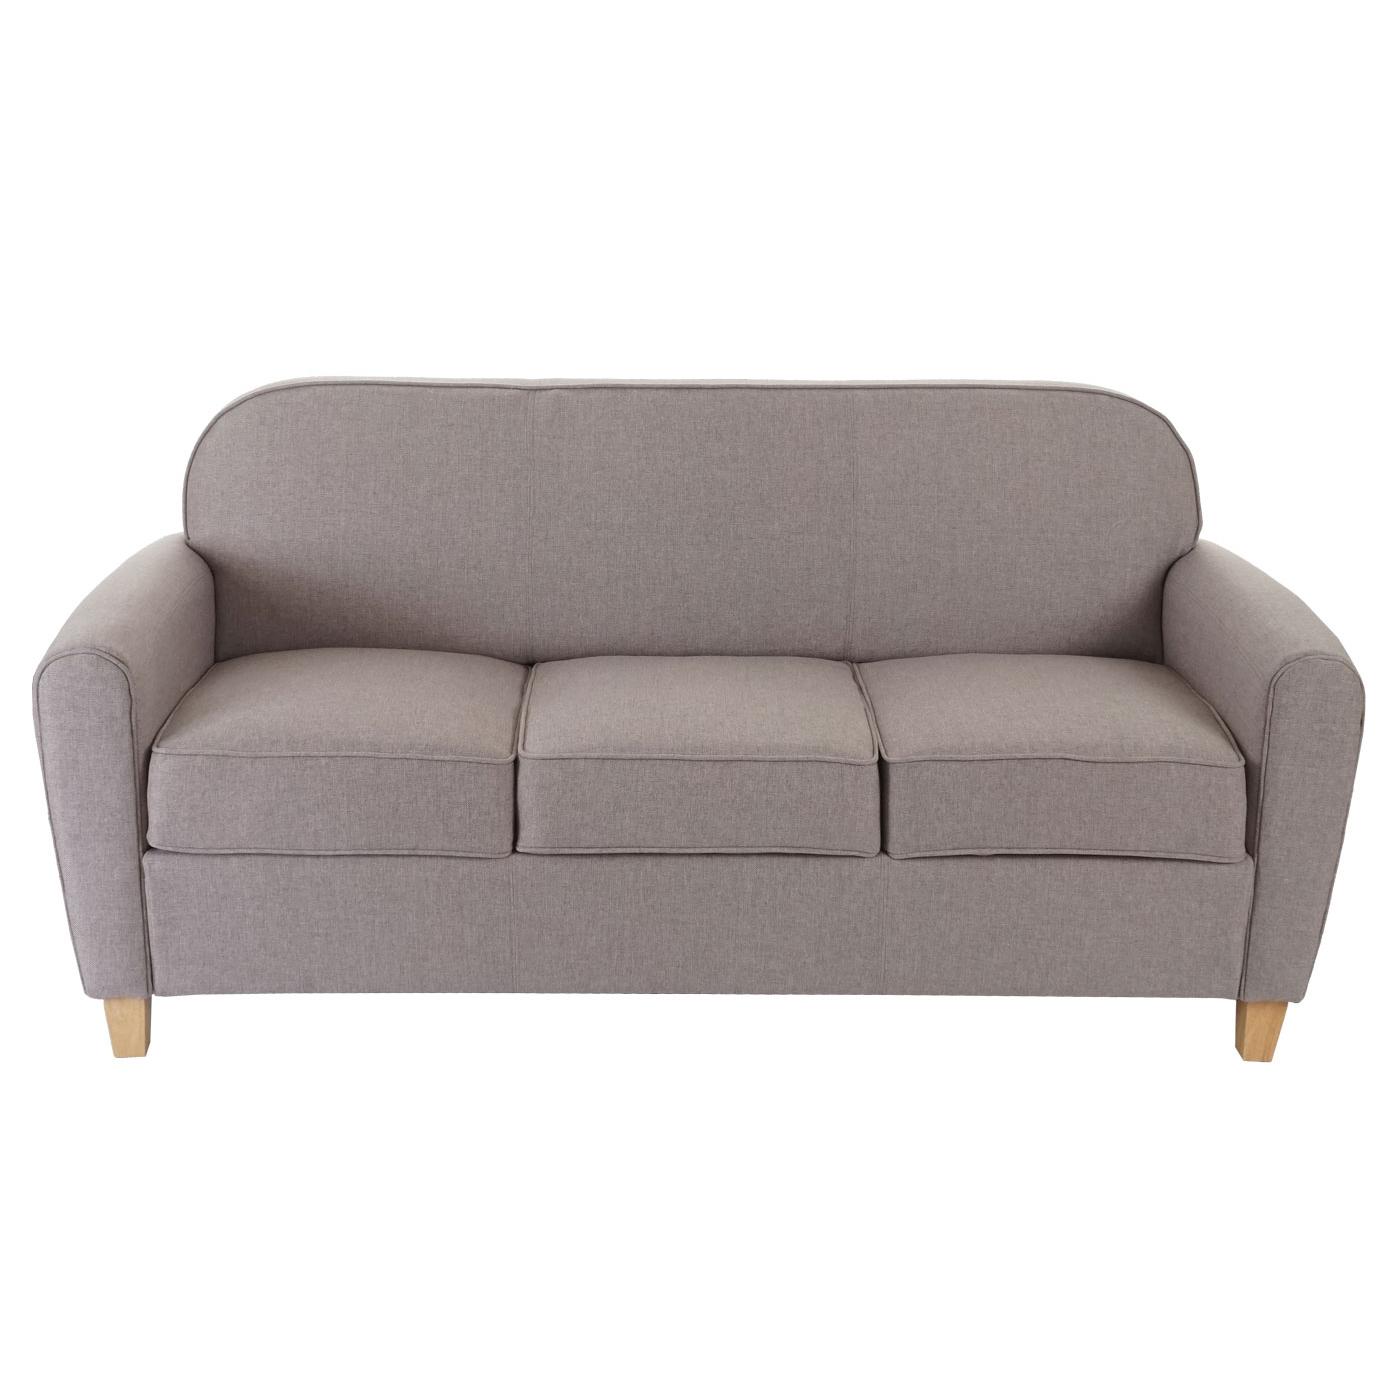 Sofa ARTIS, Dreisitzer. Elegantes Design, bequem und vielseitig, Lederbezug, Farbe Grau